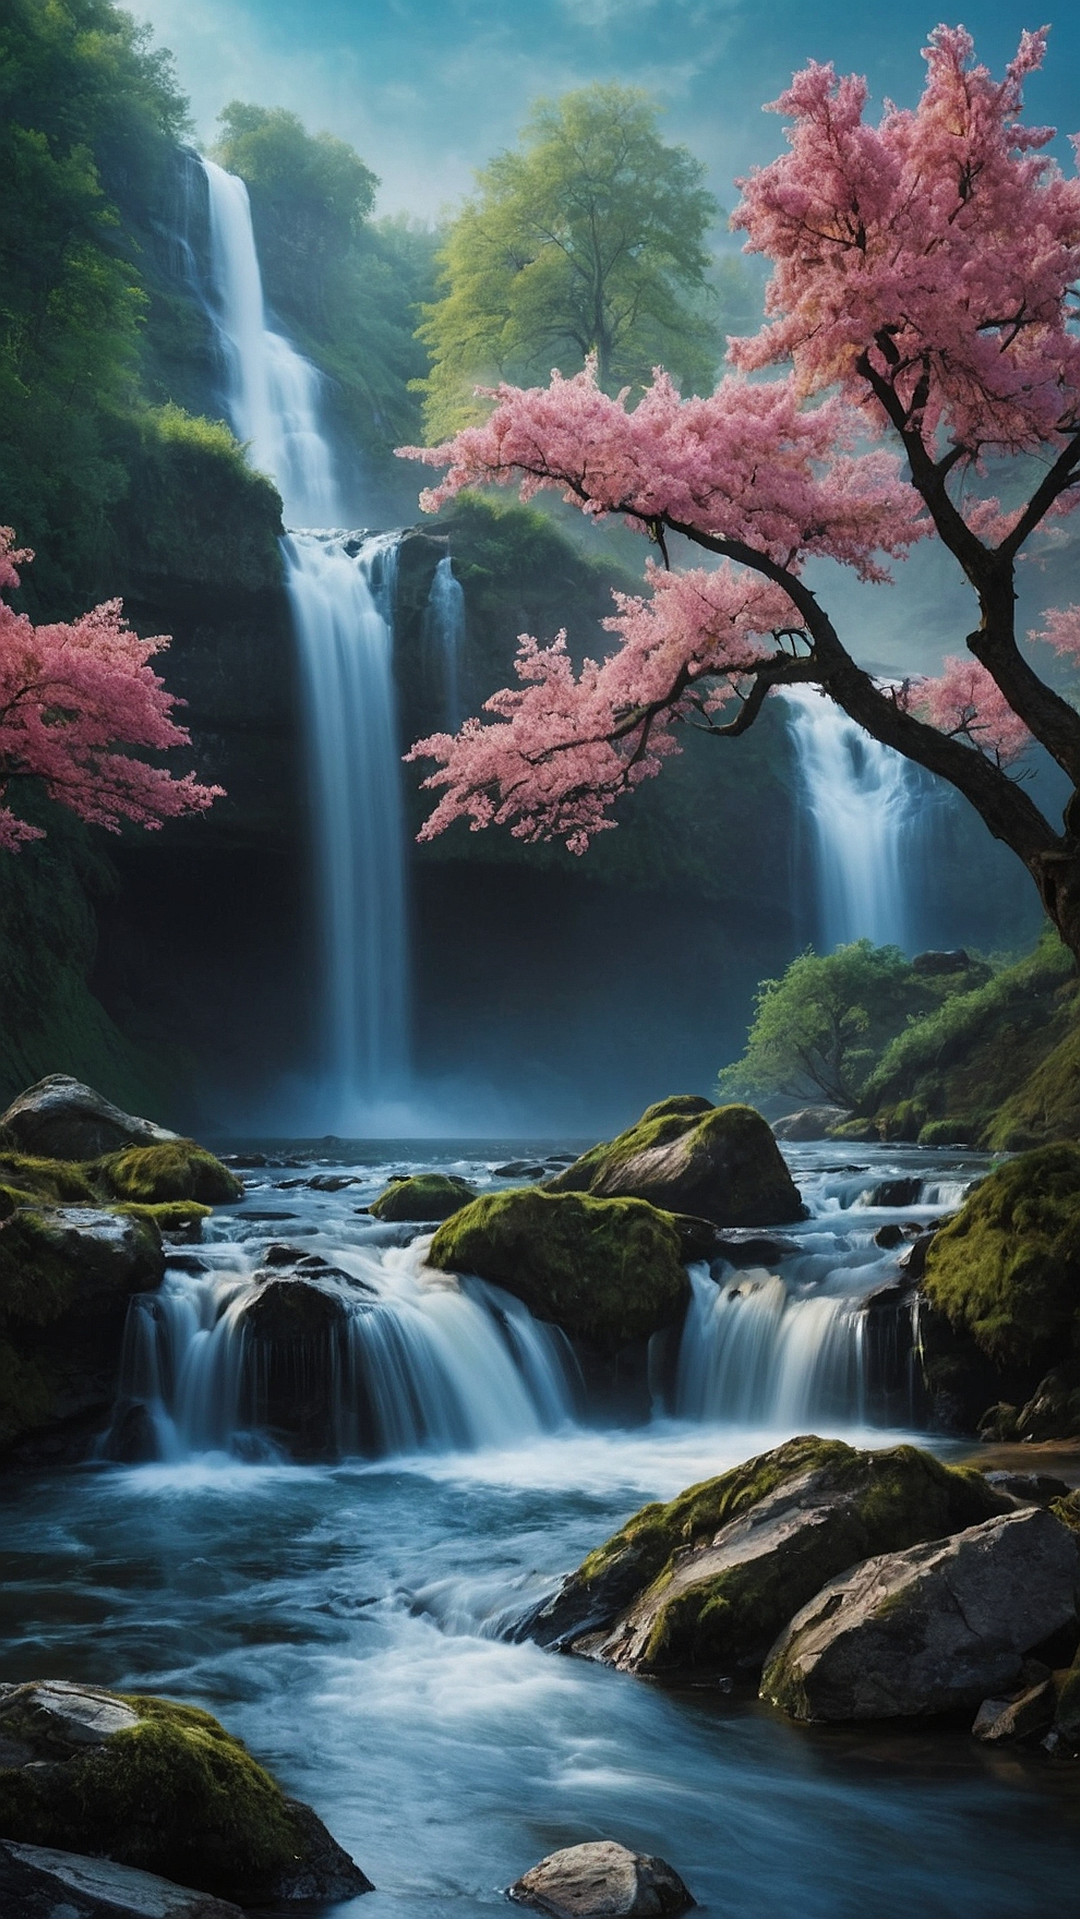 Enchanting Cascades: Waterfall Wallpaper Inspiration